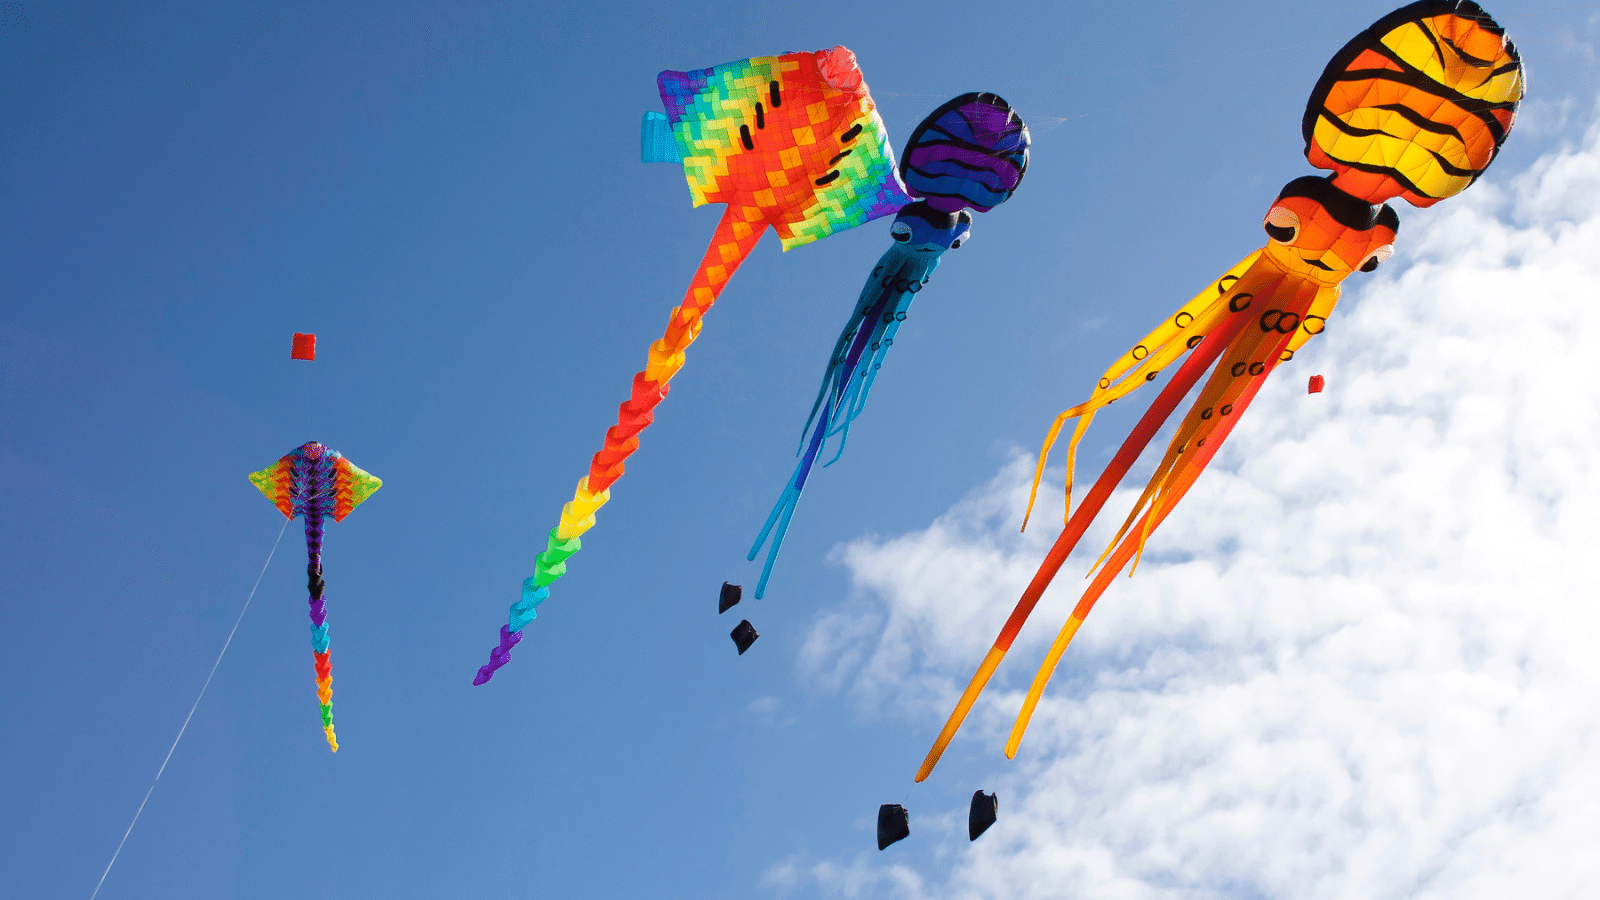 flying kites on blue sky